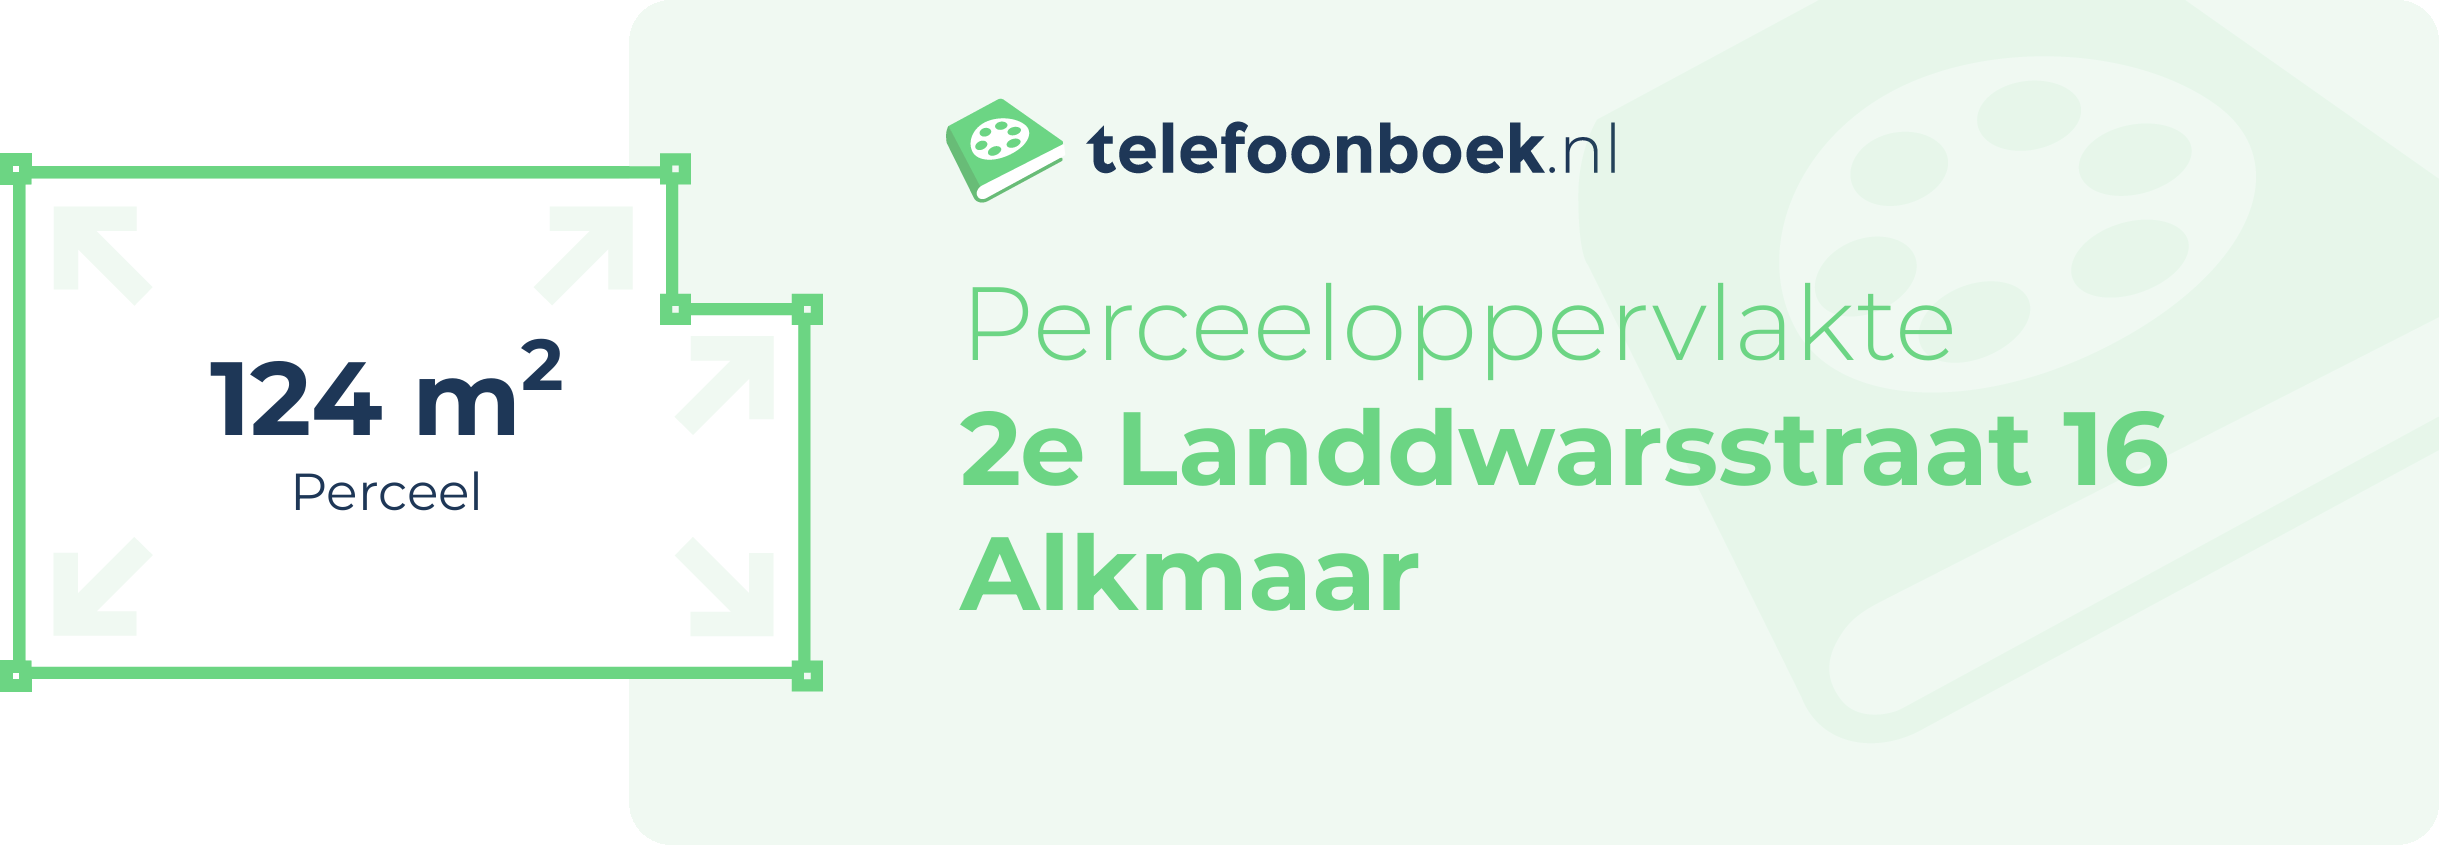 Perceeloppervlakte 2e Landdwarsstraat 16 Alkmaar